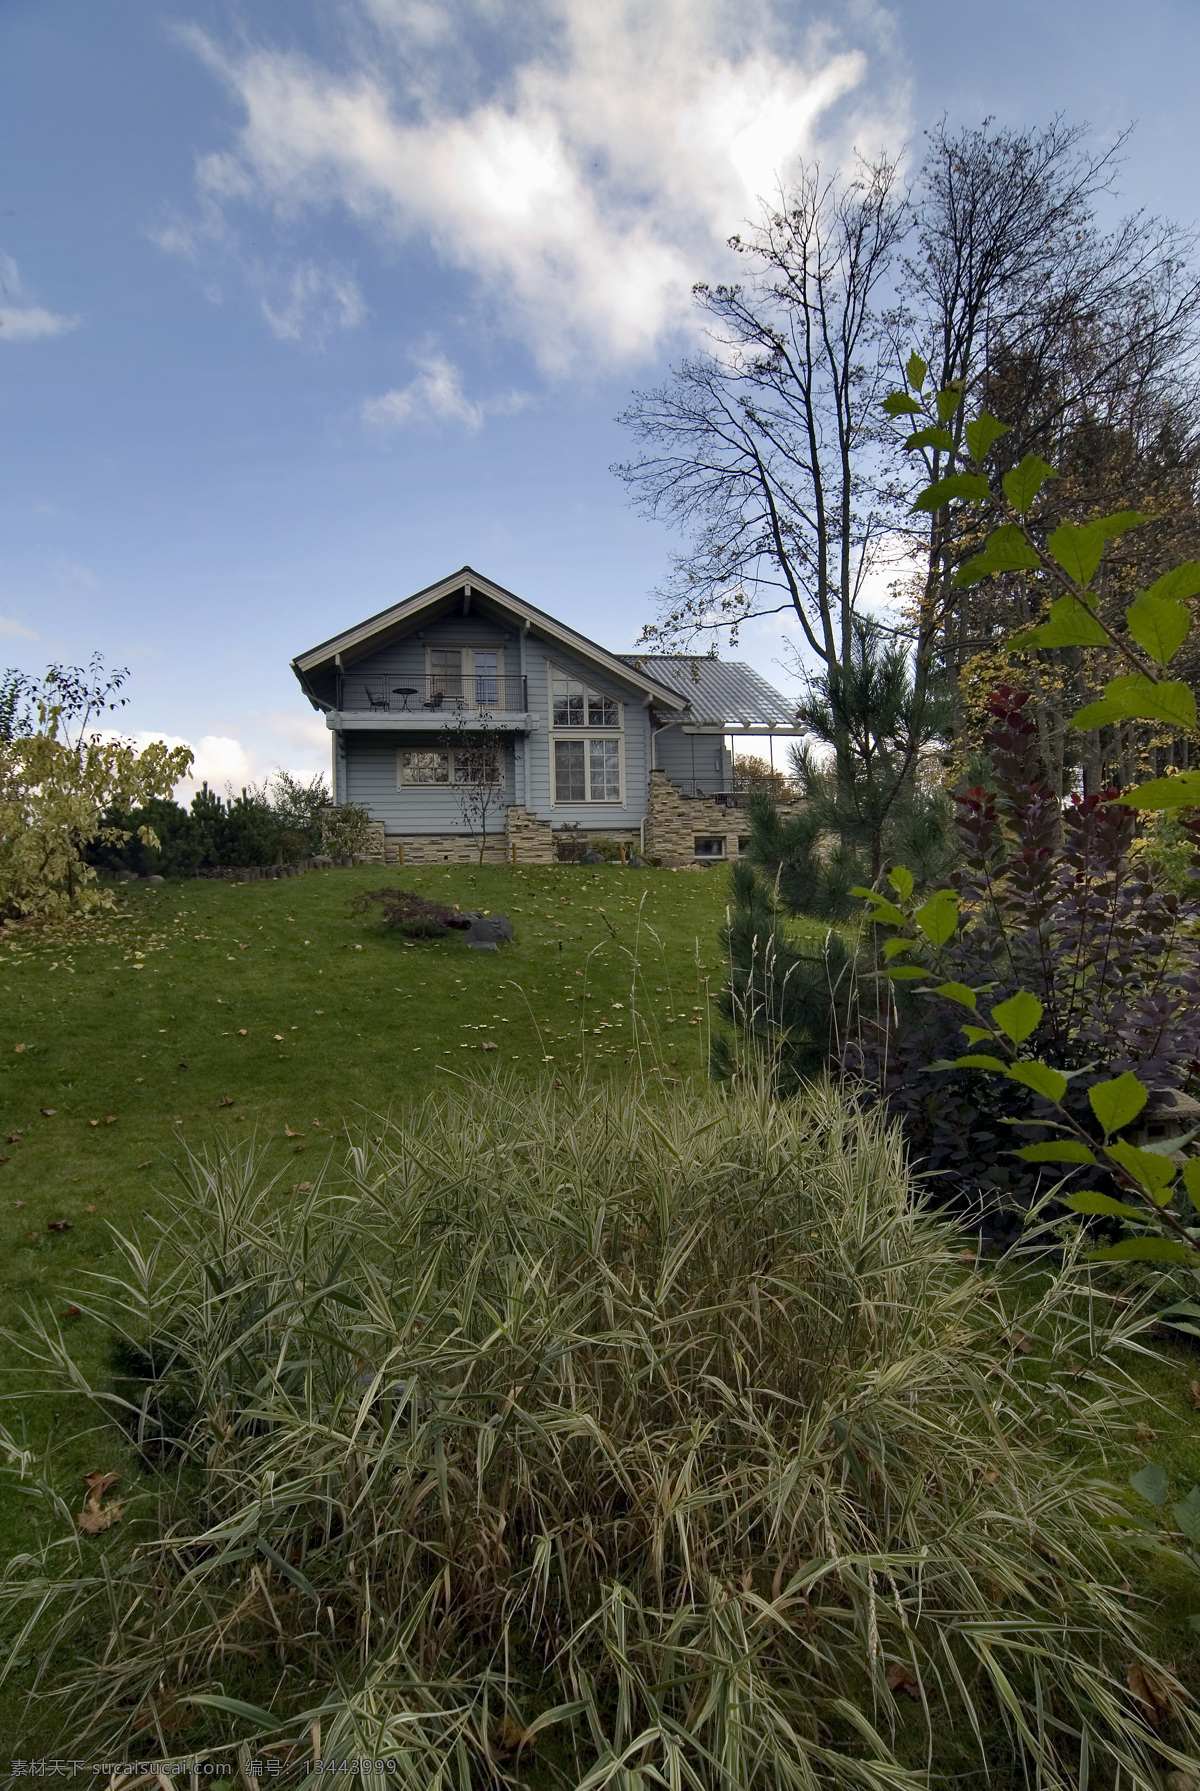 草地 旁 木房 子 房屋 住房 木板房 木墙壁 木质 木房子 木制房屋 建筑园林 蓝天白云 建筑设计 环境家居